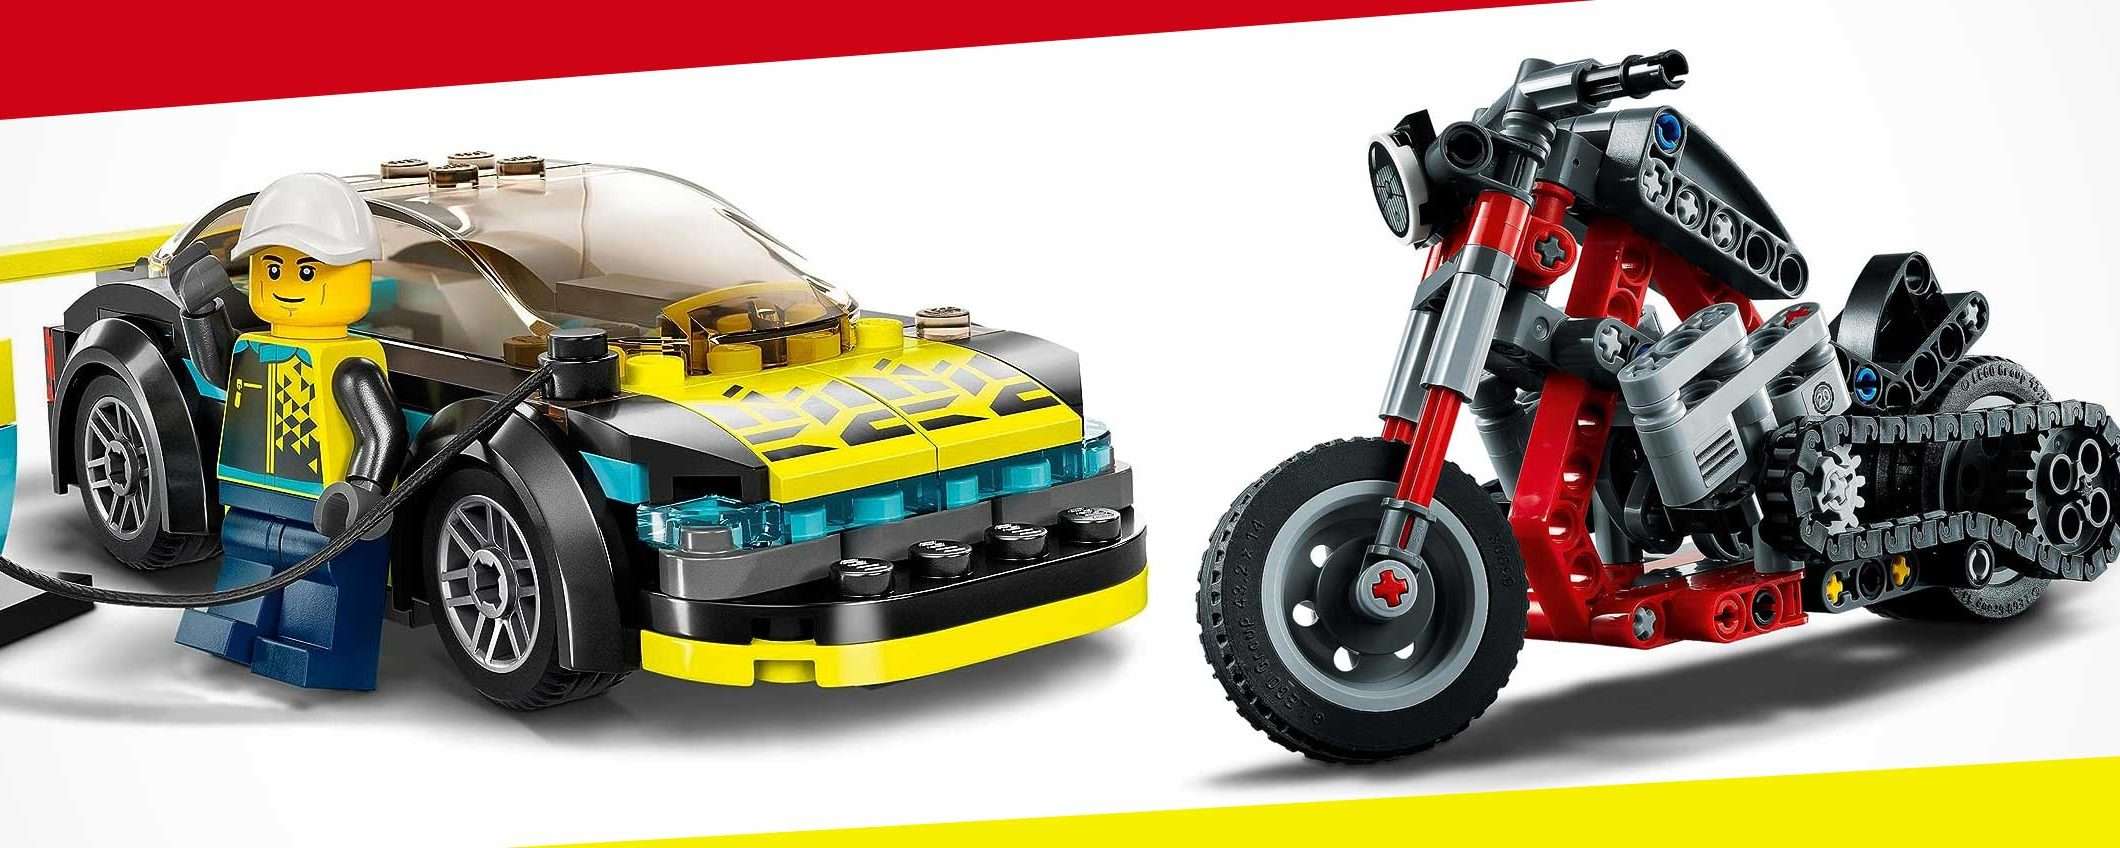 Modellino LEGO Technic 2-in-1: su  a 9,99 euro con questo SCONTO